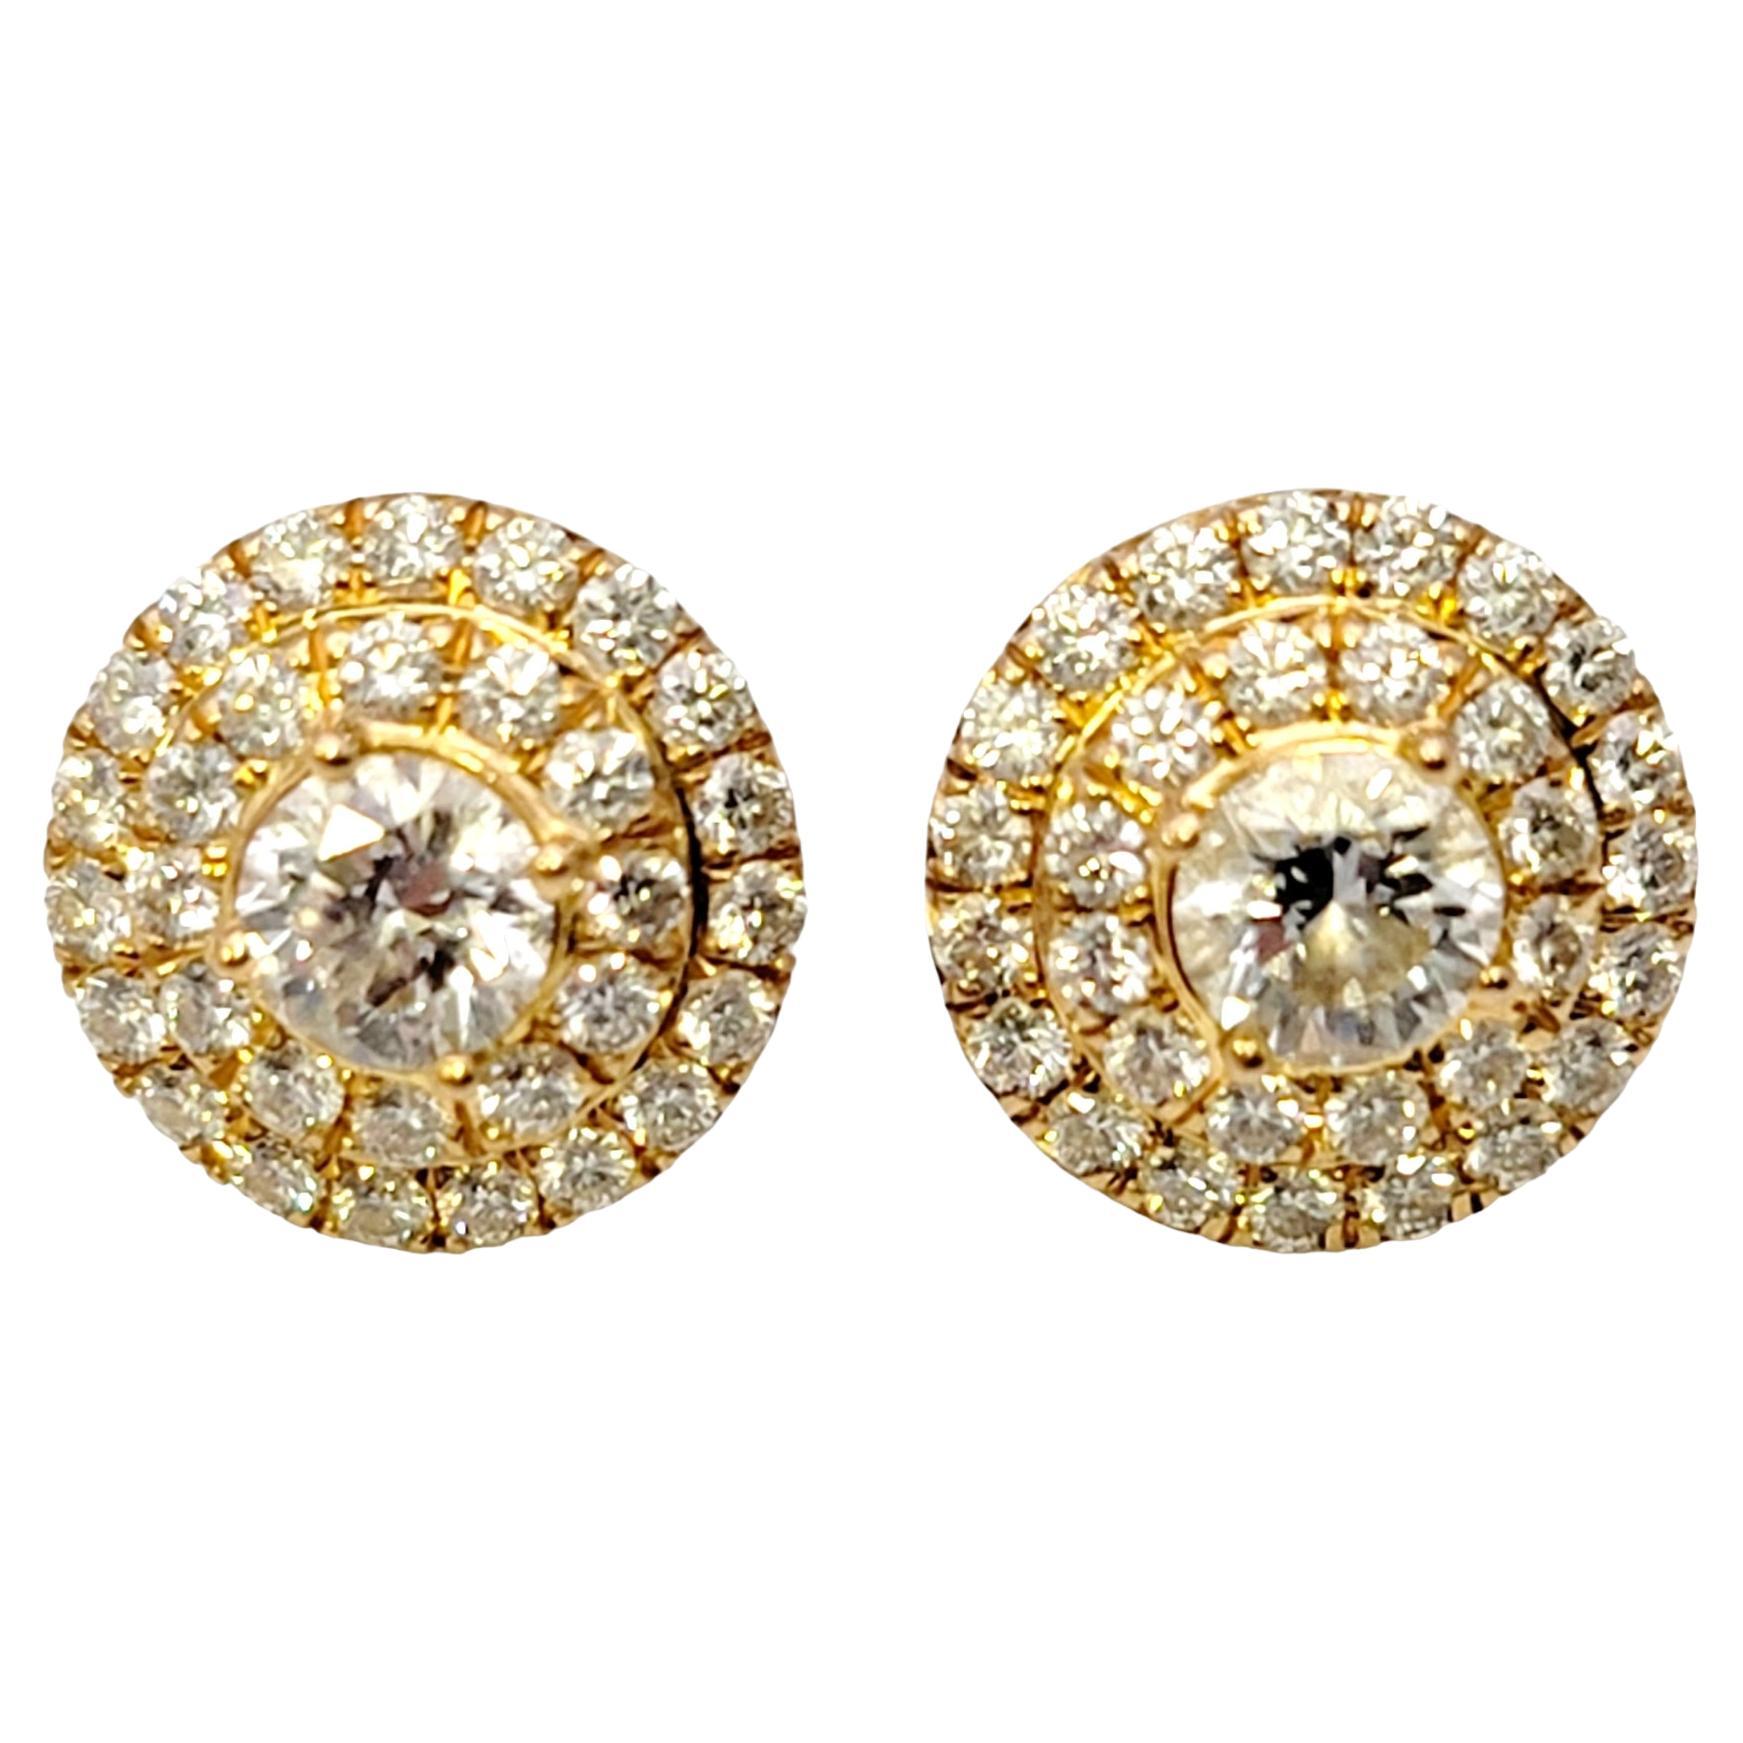 Tiffany & Co. Soleste Diamond Double Halo Stud Earrings in 18 Karat Yellow Gold 